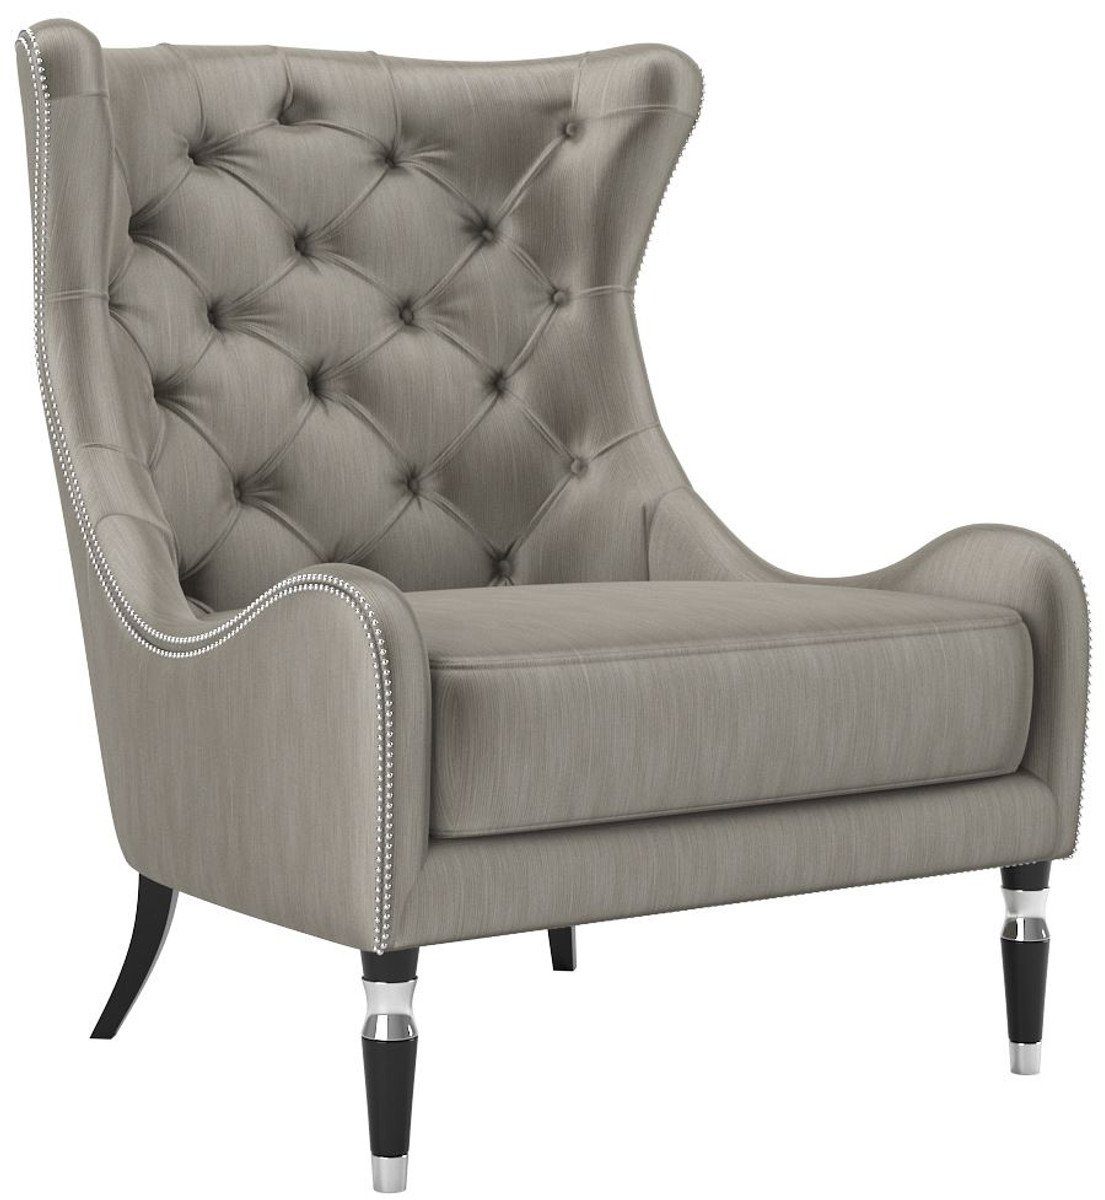 Casa Padrino Sessel Luxus Art Deco Ohrensessel Grau / Schwarz / Silber 90 x 75 x H. 105 cm - Wohnzimmer Sessel - Luxus Qualität - Art Deco Möbel